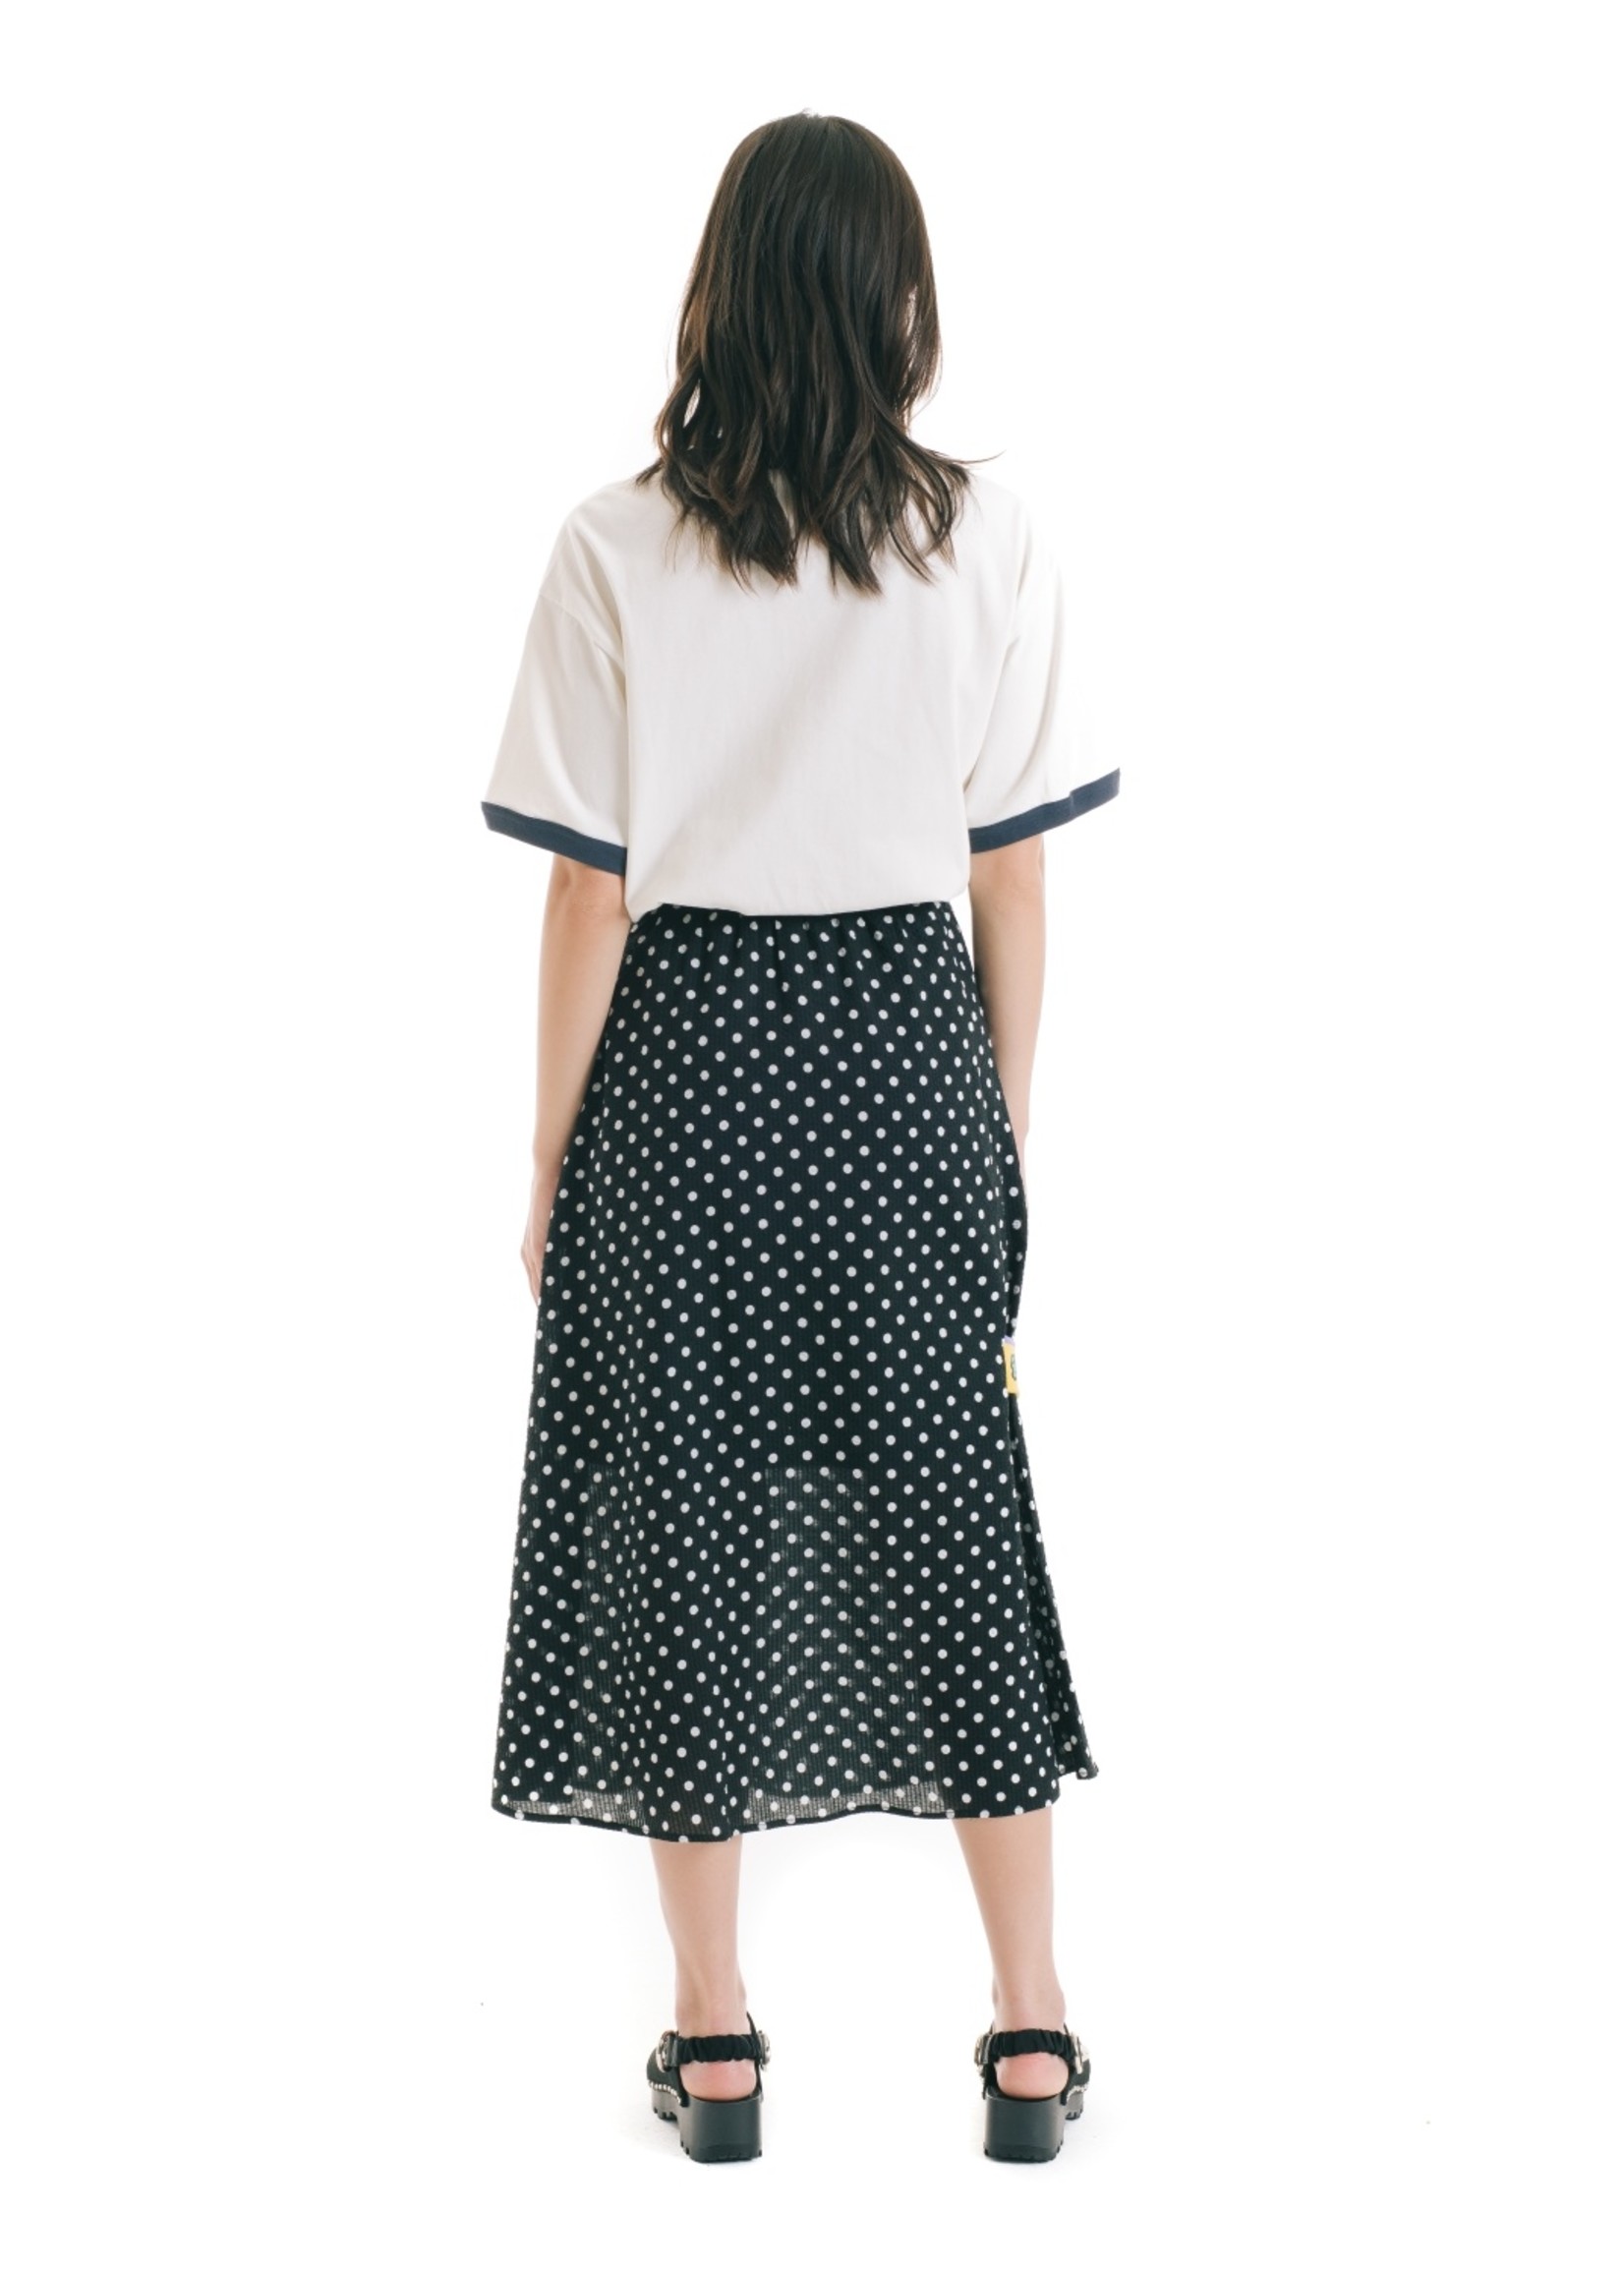 Brain Dead Long Panel Skirt with belt in Black and White Polka Dot